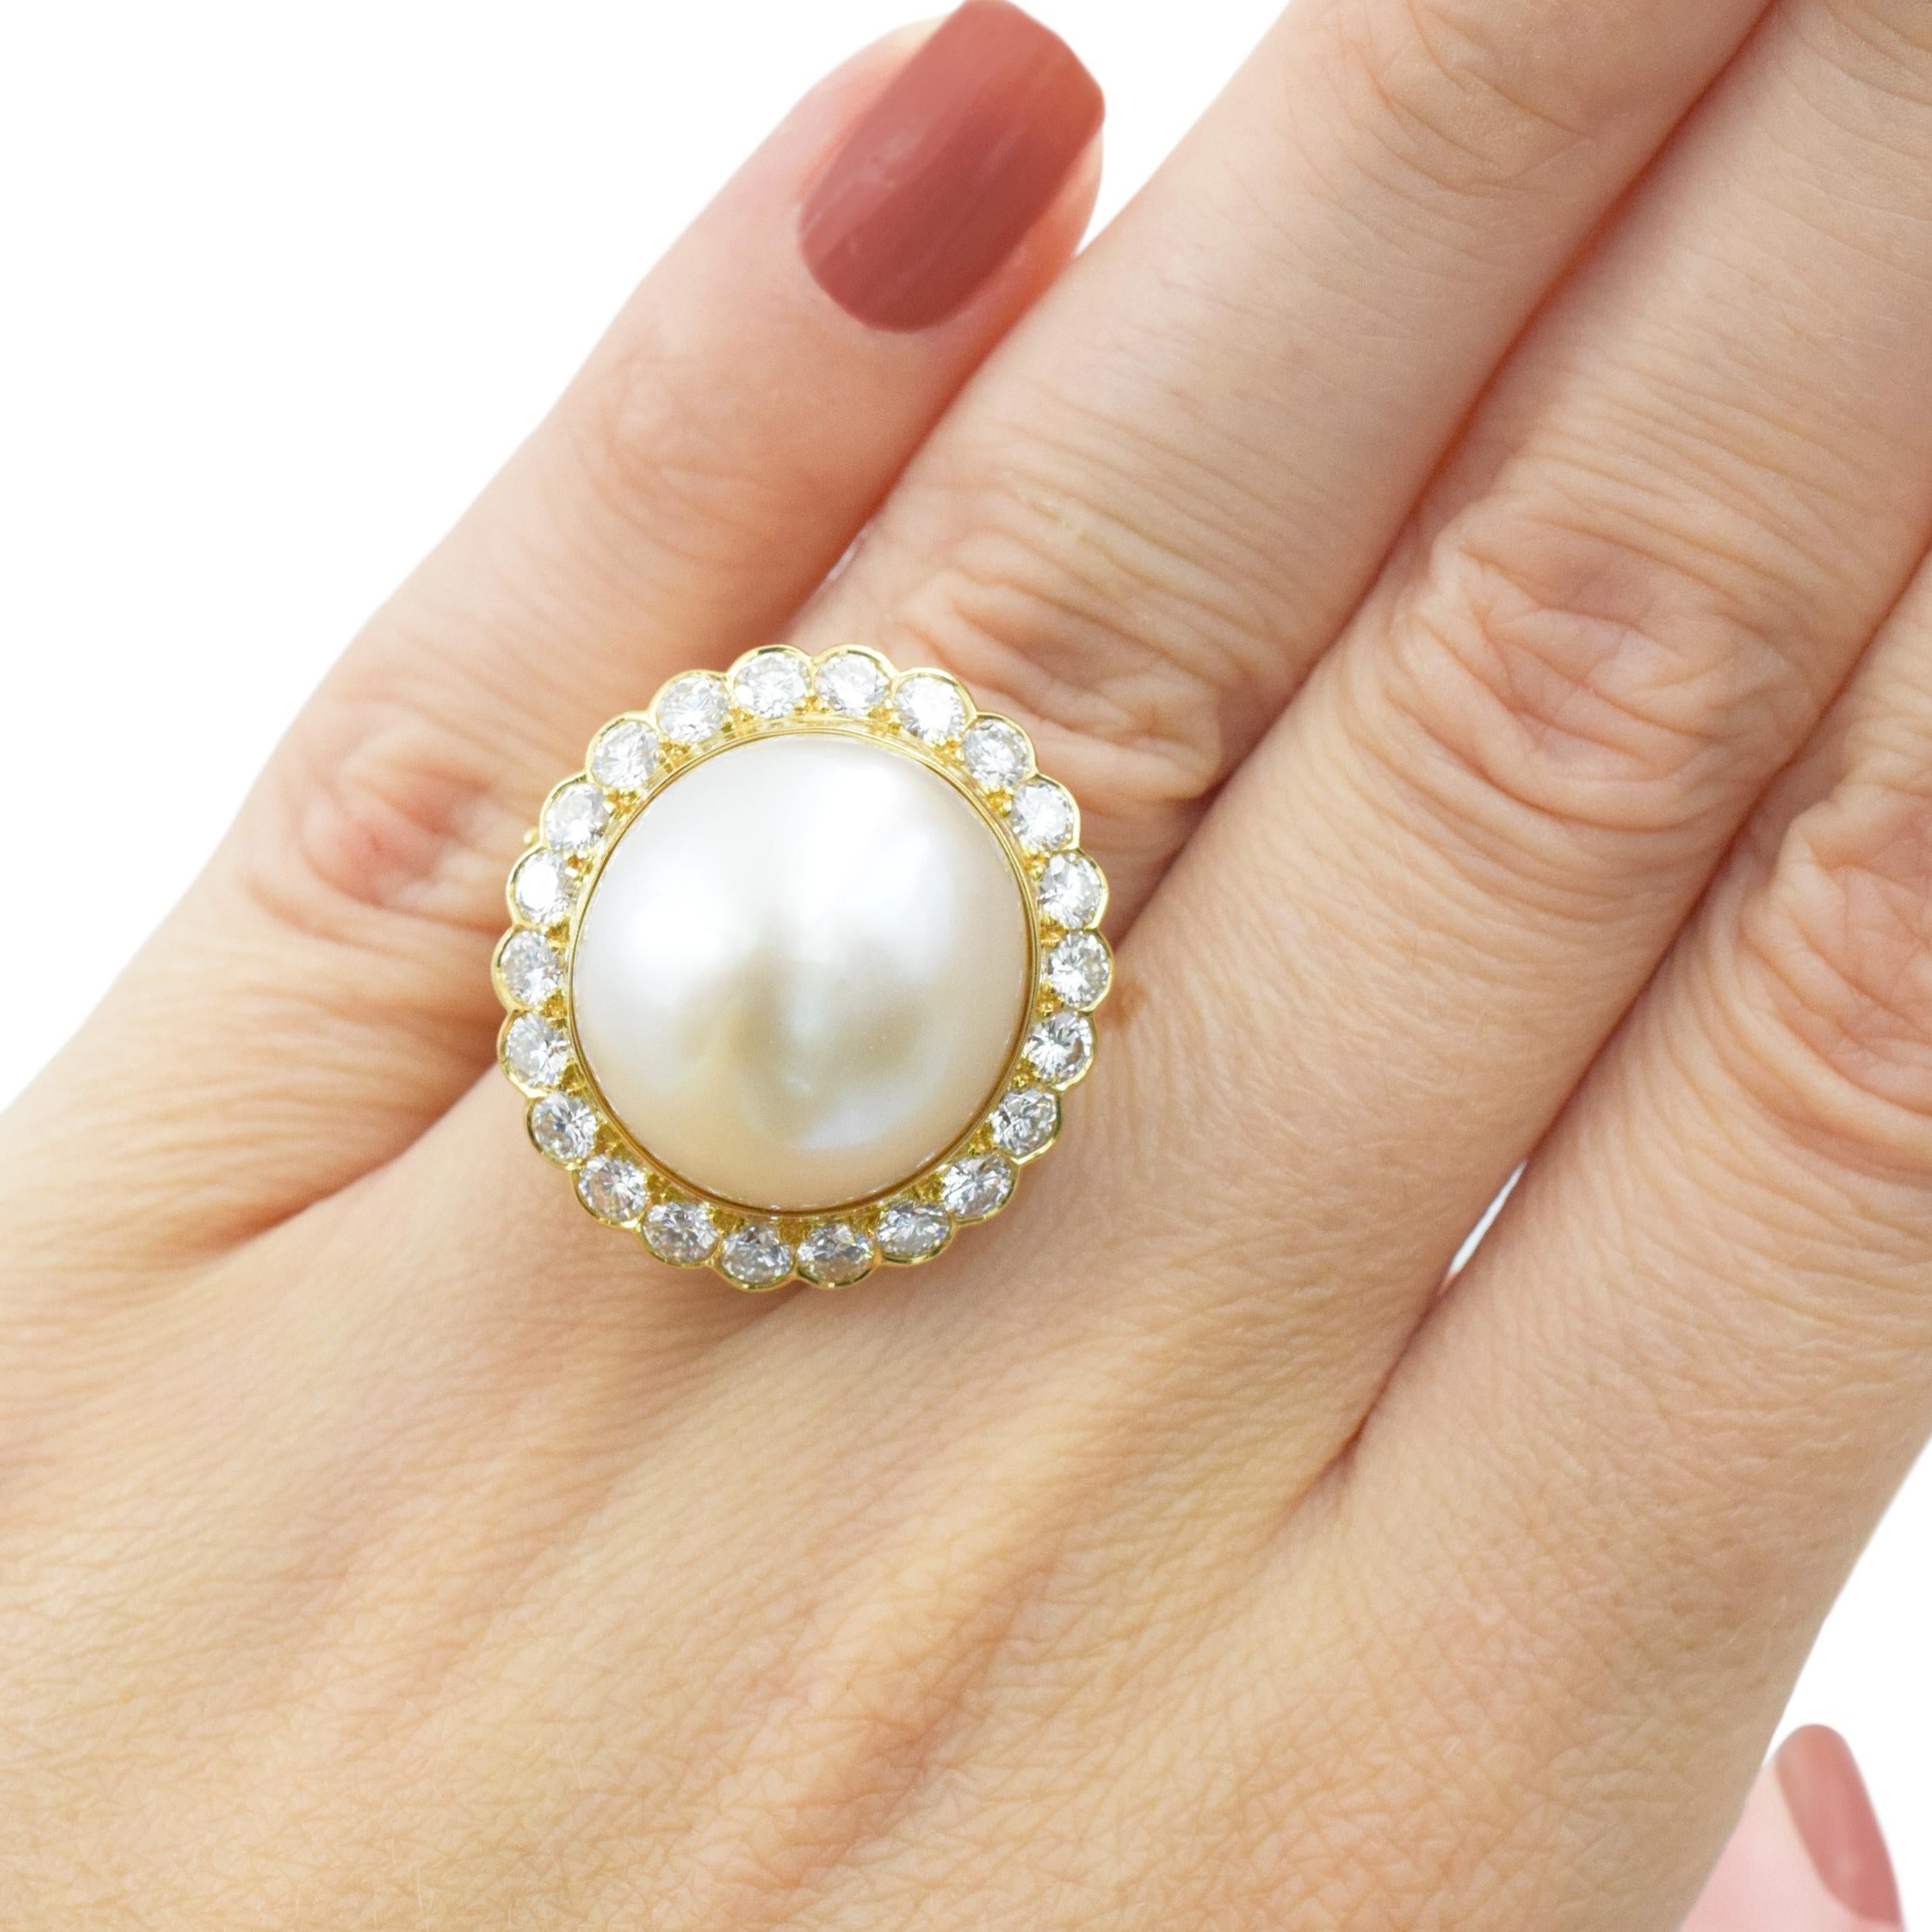 Van Cleef & Arpels Perlen- und Diamantring aus 18k Gelbgold. In der Mitte dieses Rings befindet sich eine ovale Zuchtperle, die etwa 17,4 x 14,5 mm groß ist. Die Perle hat eine cremig-weiße Farbe mit zarten rosa Untertönen und gutem Glanz. Umgeben